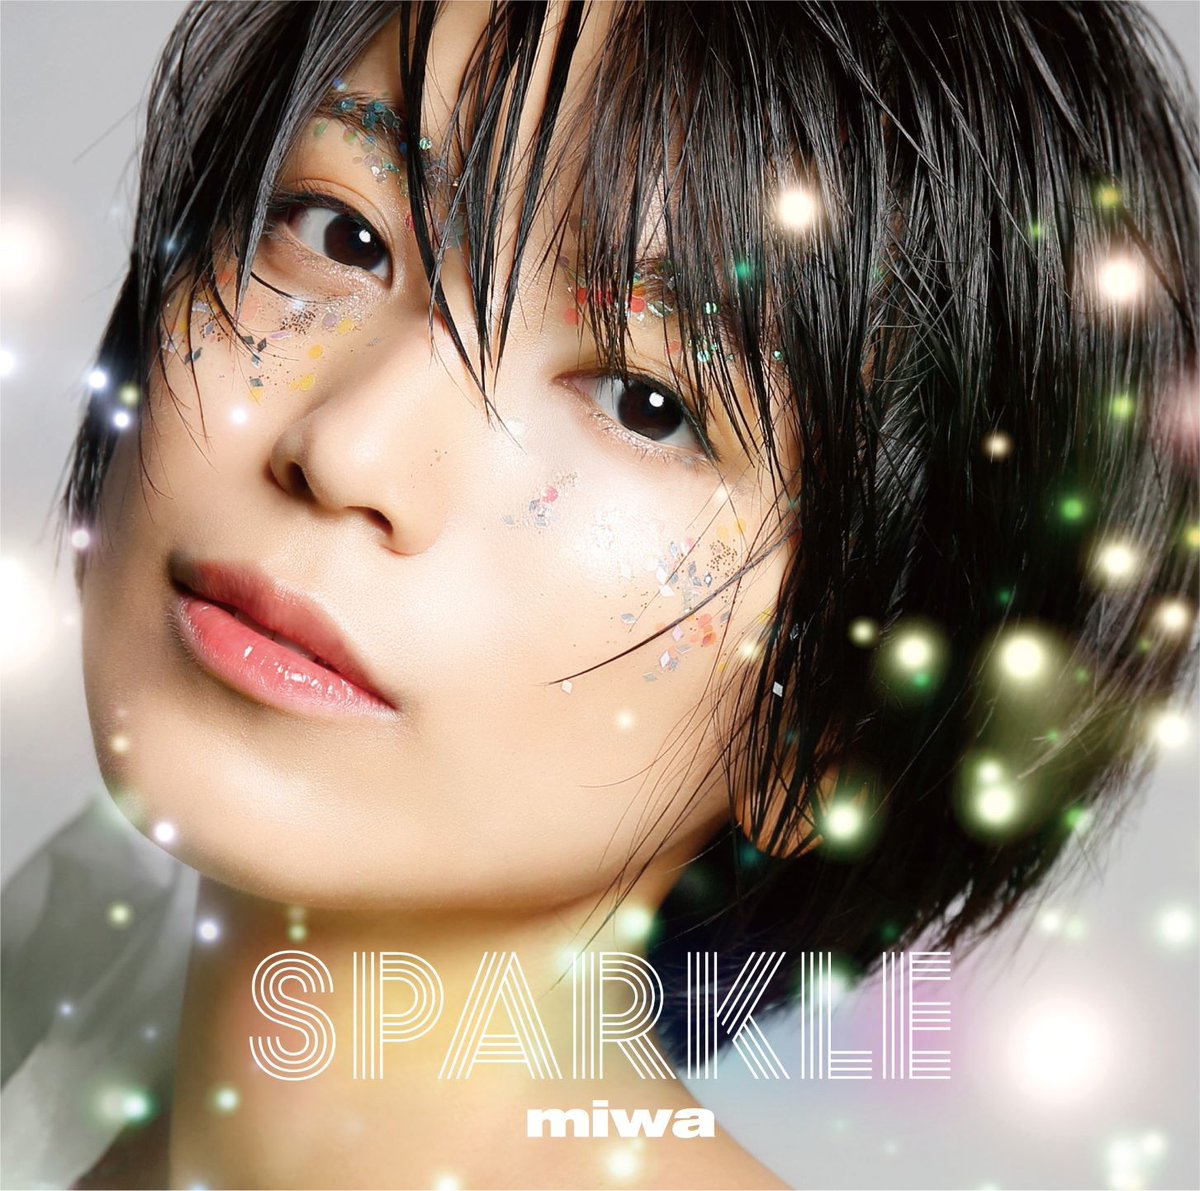 『miwa - Holiday』収録の『Sparkle』ジャケット